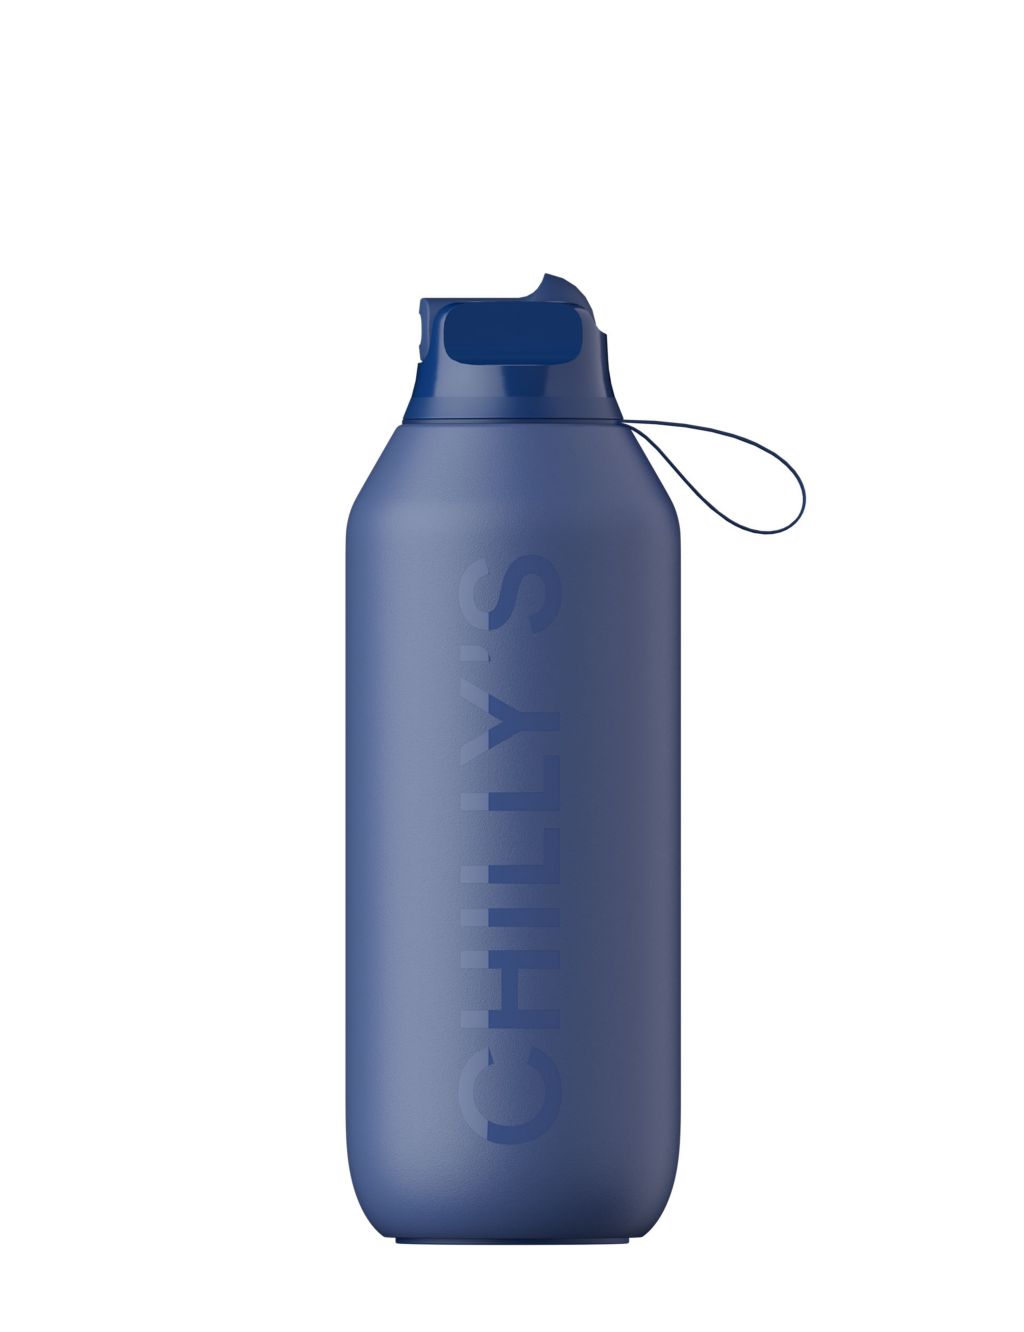 Series 2 Flip Water Bottle